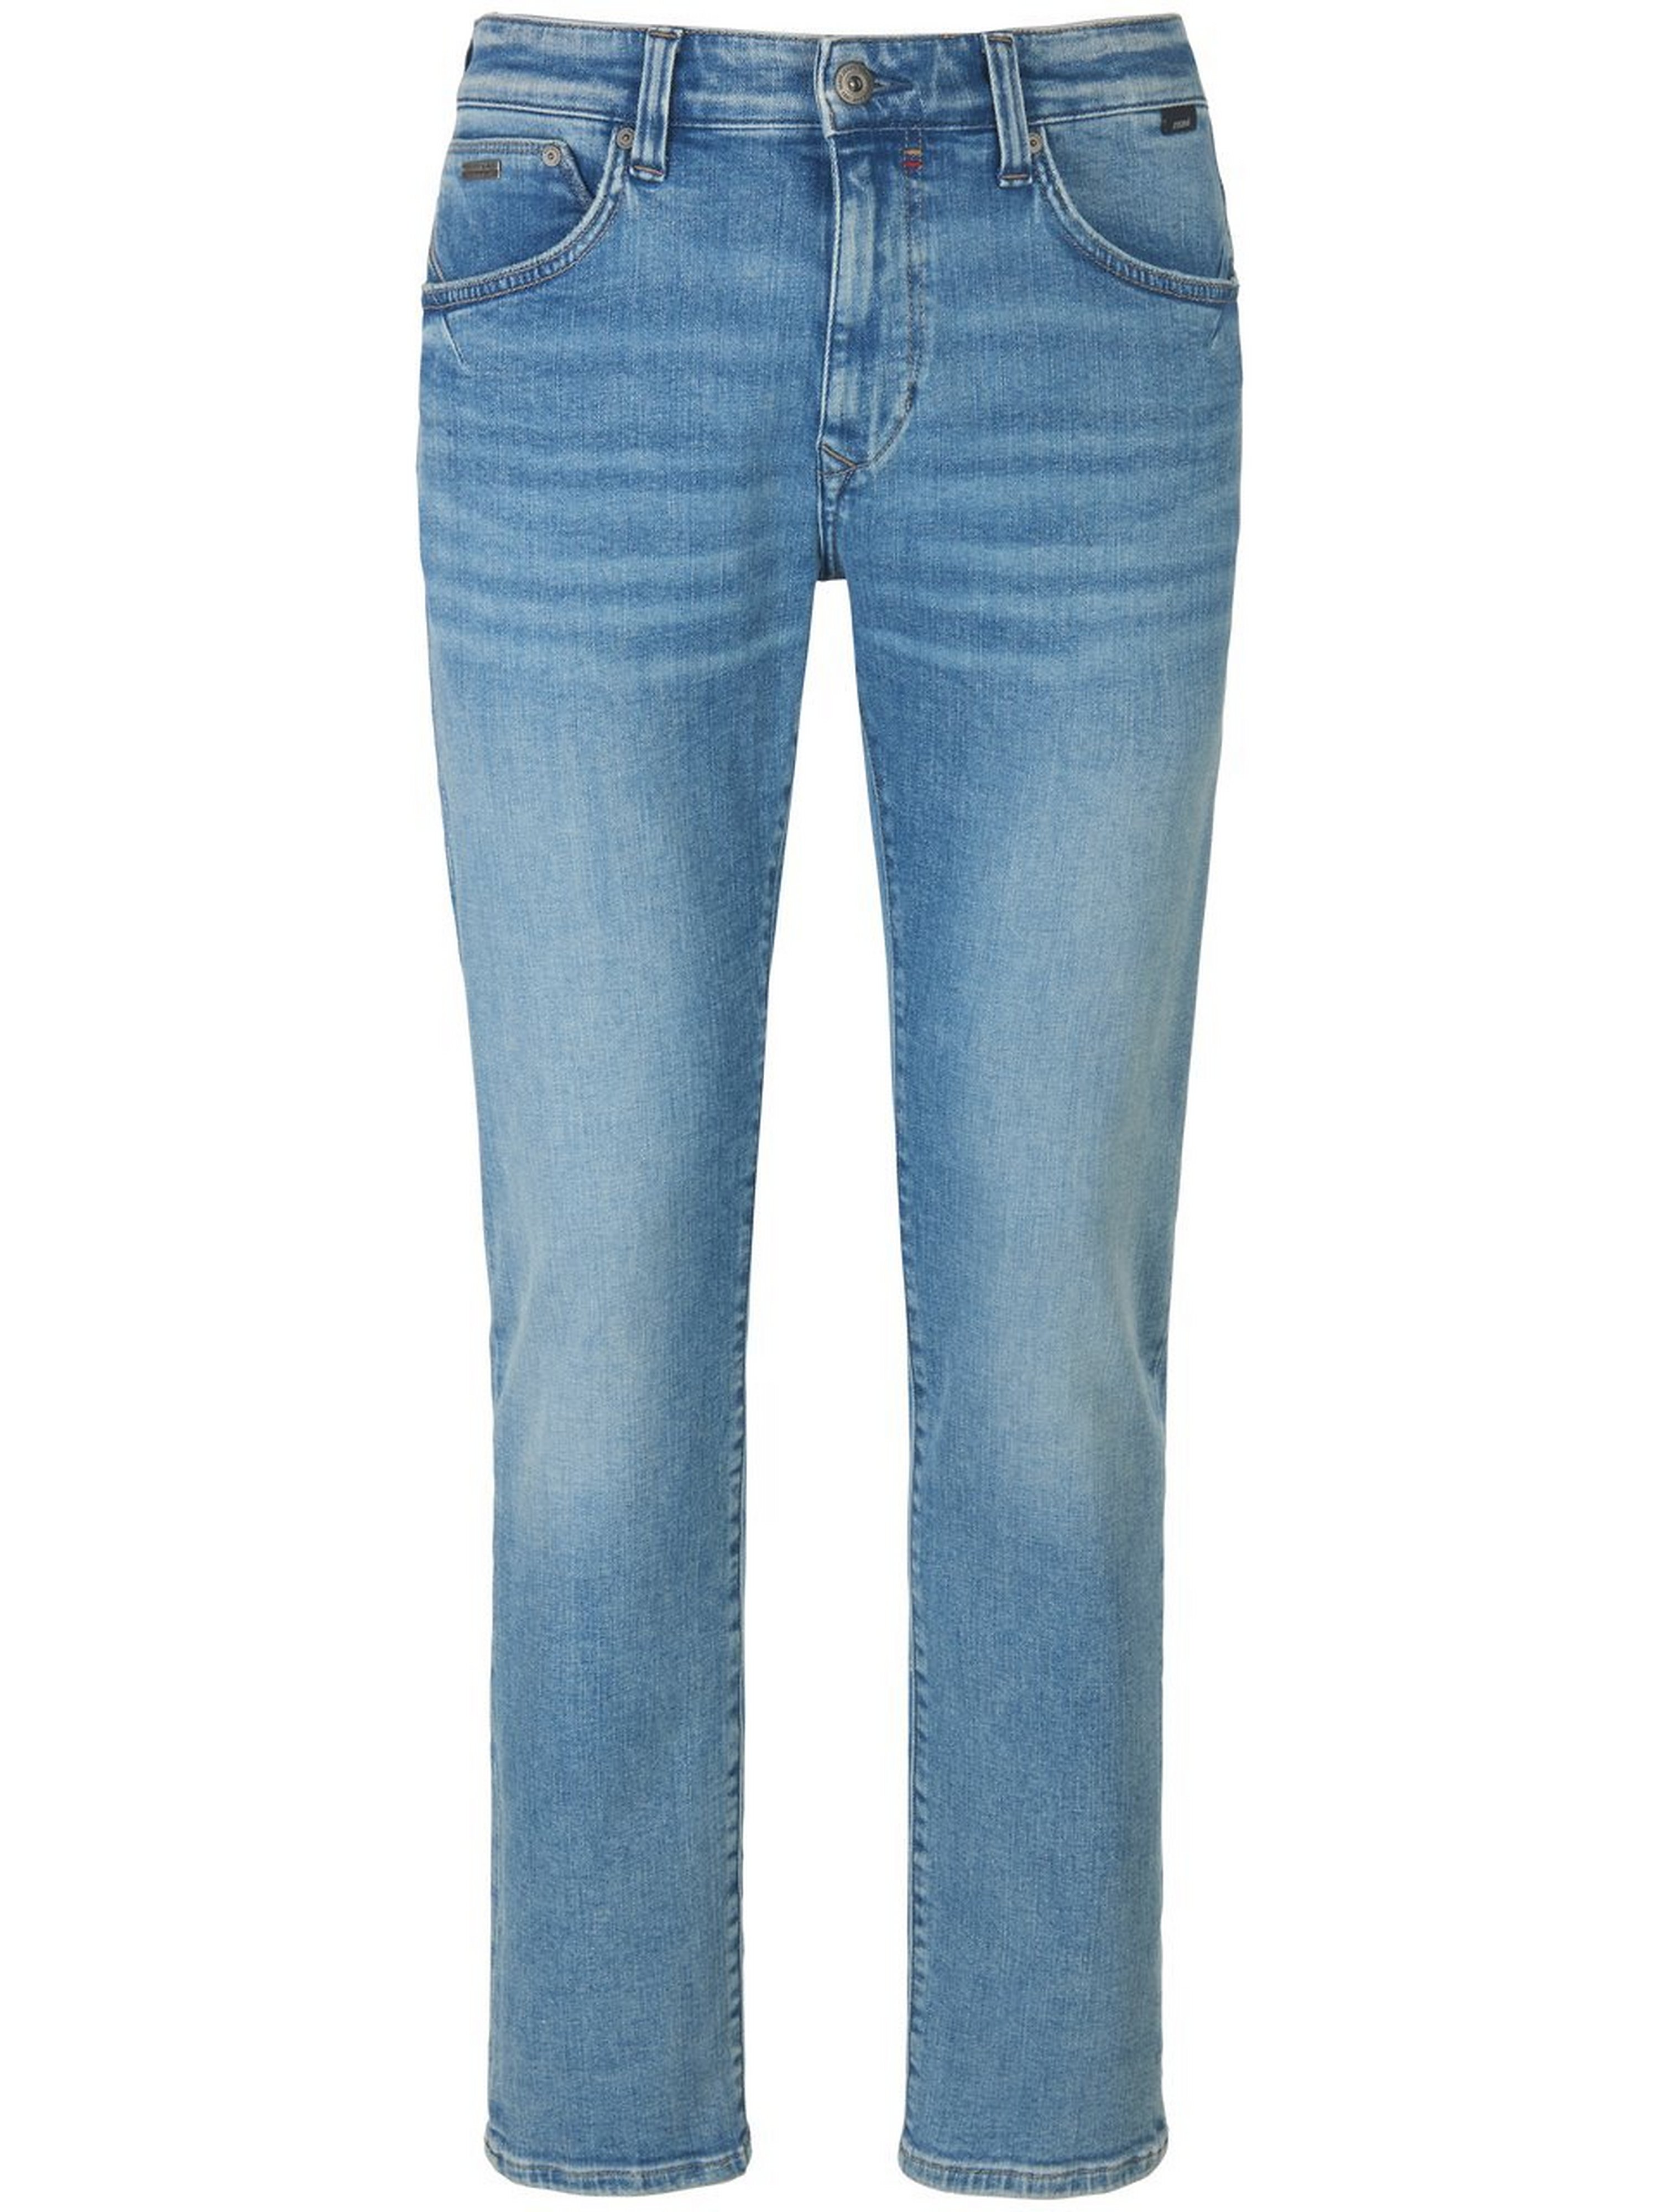 Jeans in inch-lengte 30 Van MAVI denim